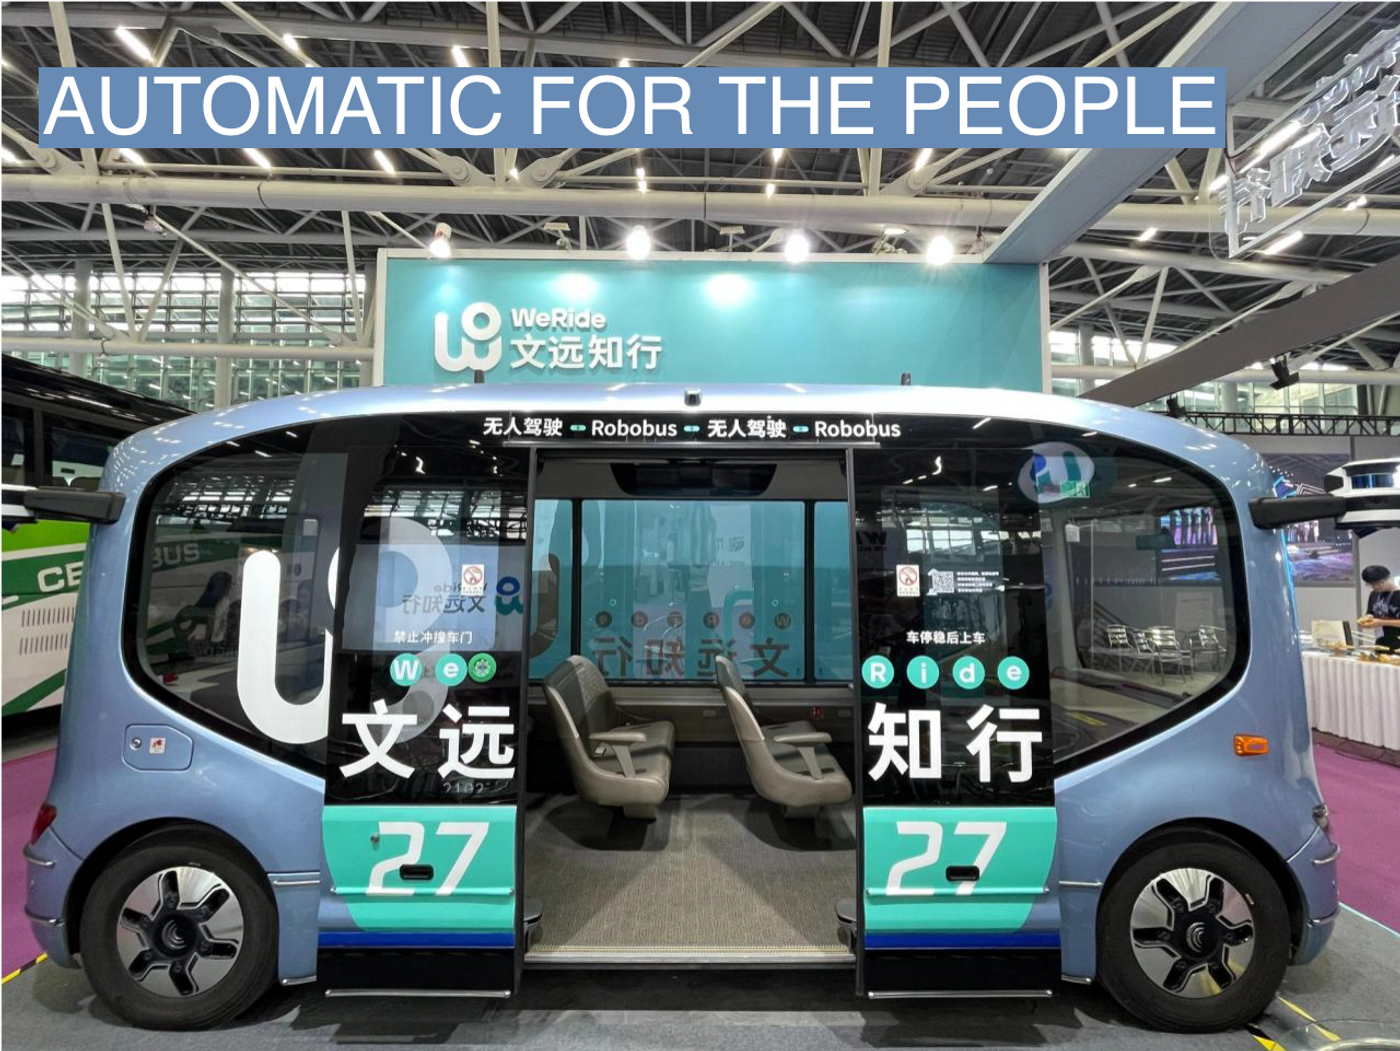 WeRide’s autonomous minibus is shown at a convention.